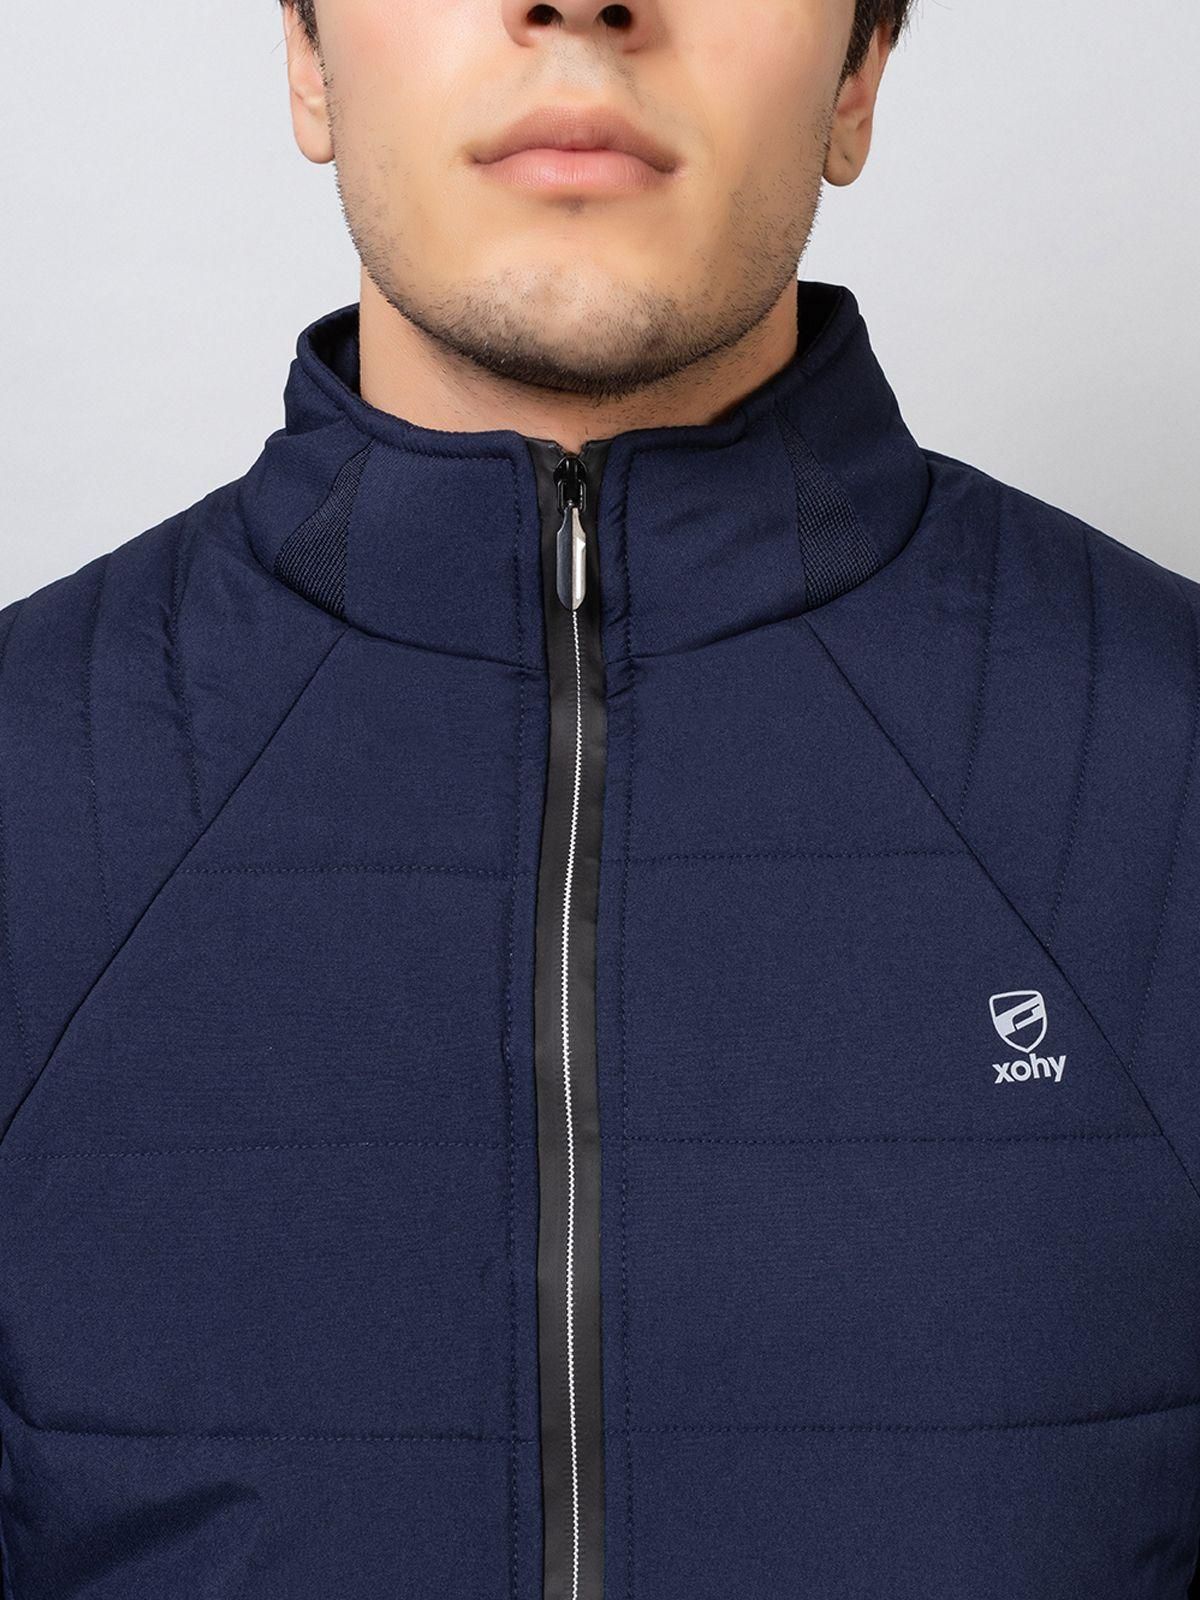 Xohy Men's Full Sleeve Puffer Sportwear Navy Jacket